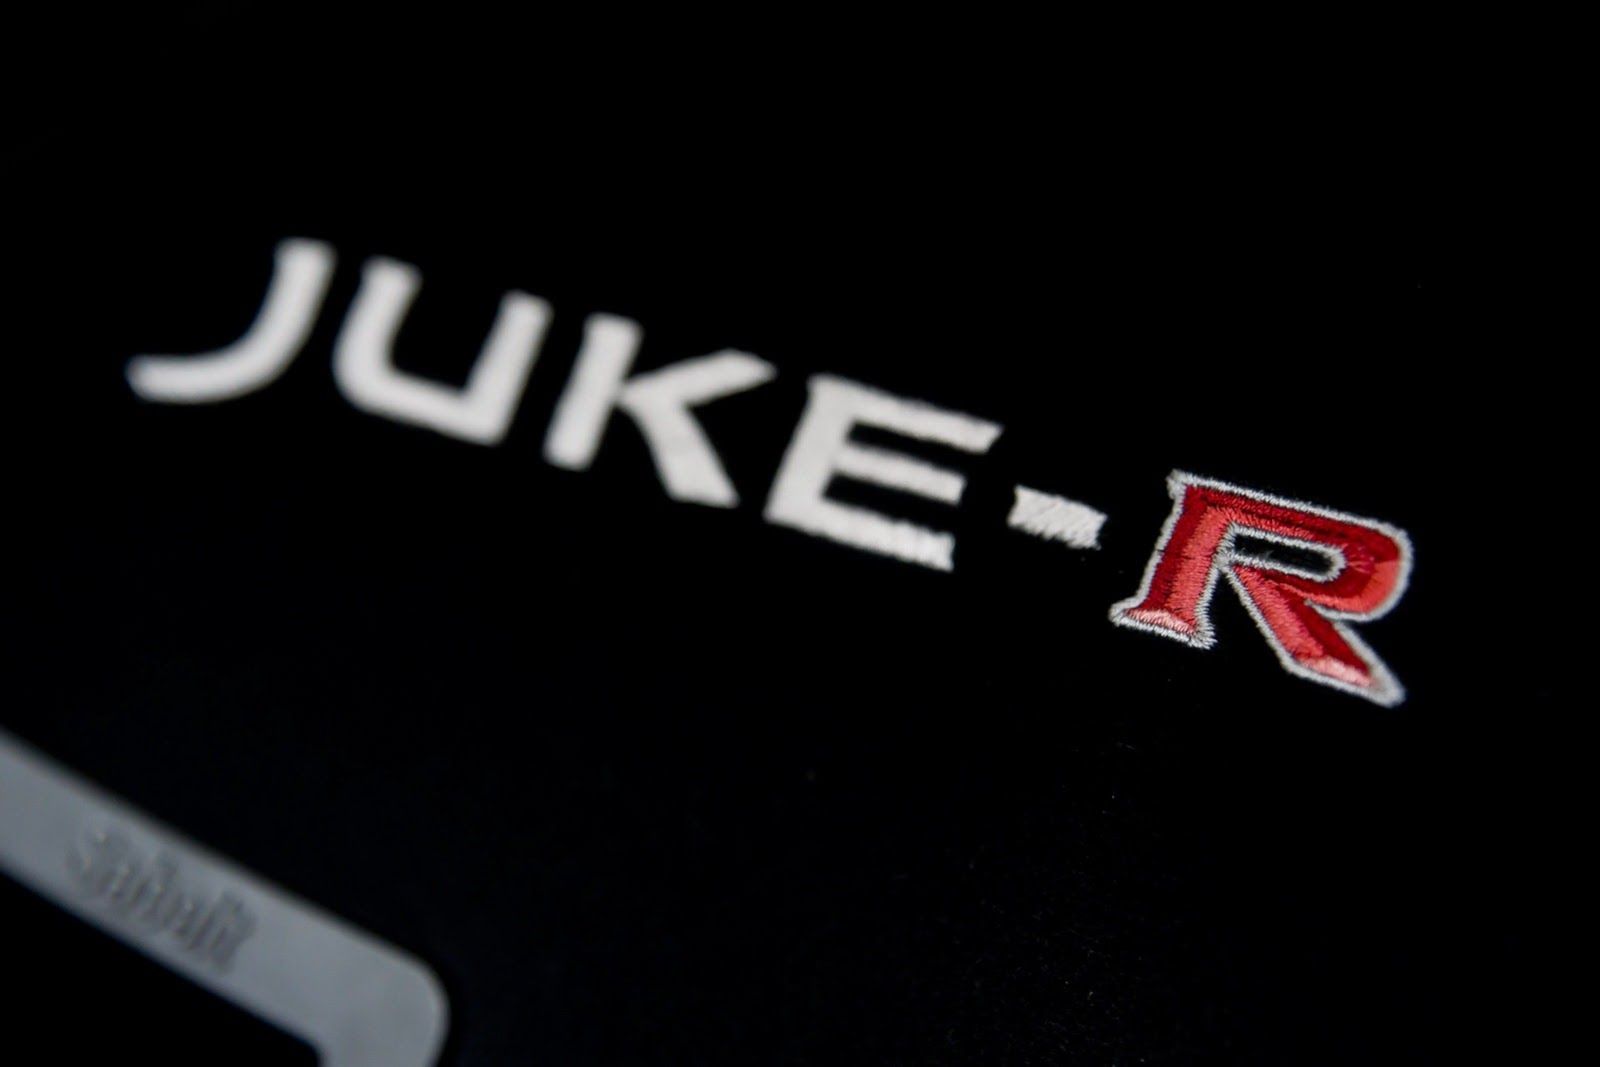 2013 Nissan Juke-R #001